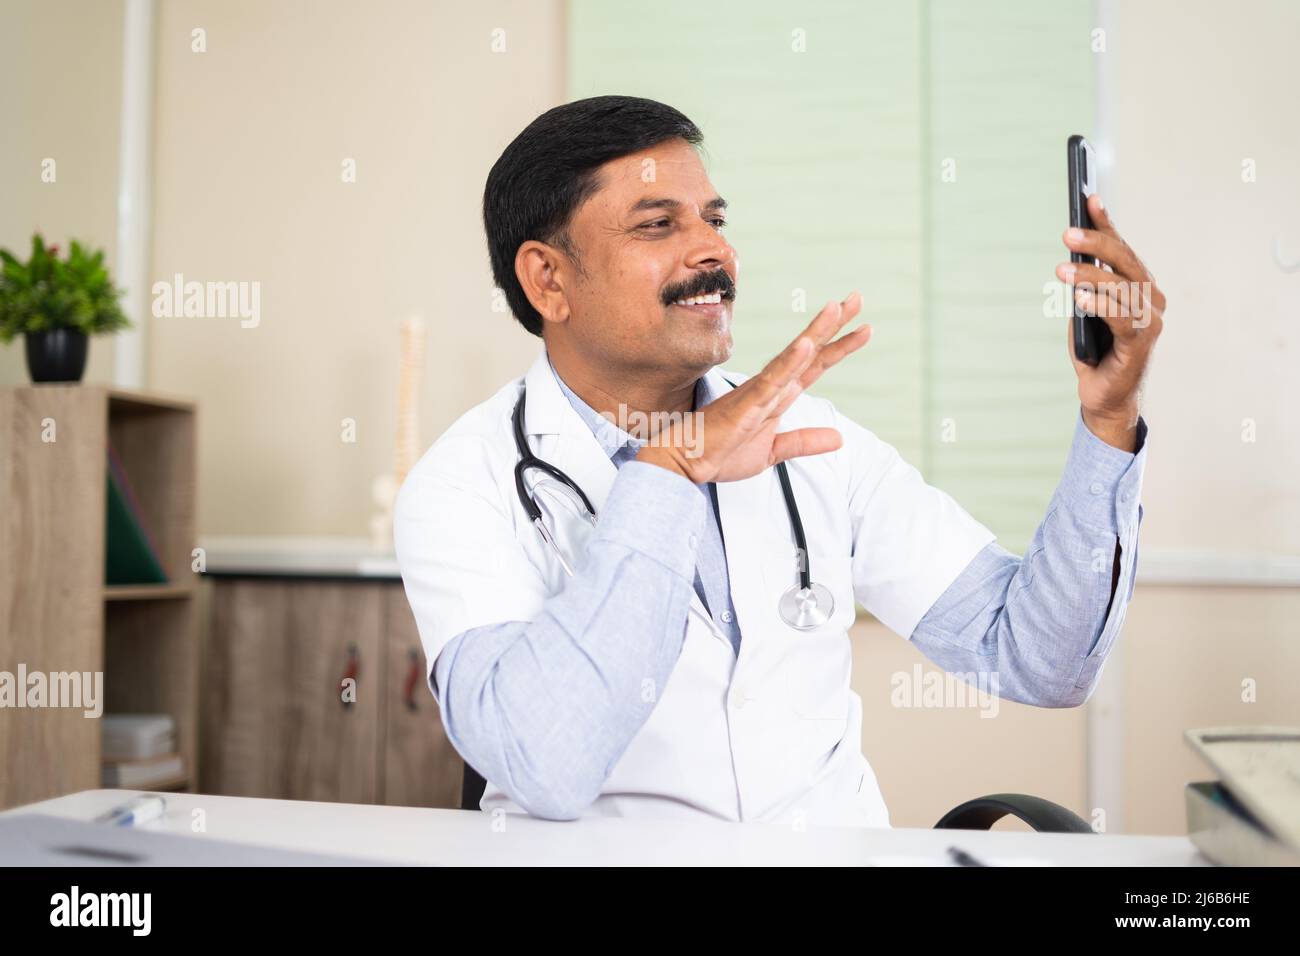 Medico in videochiamata con il paziente sul telefono cellulare in ospedale - concetto di salute, consulenza medica visruale e tecnologia Foto Stock